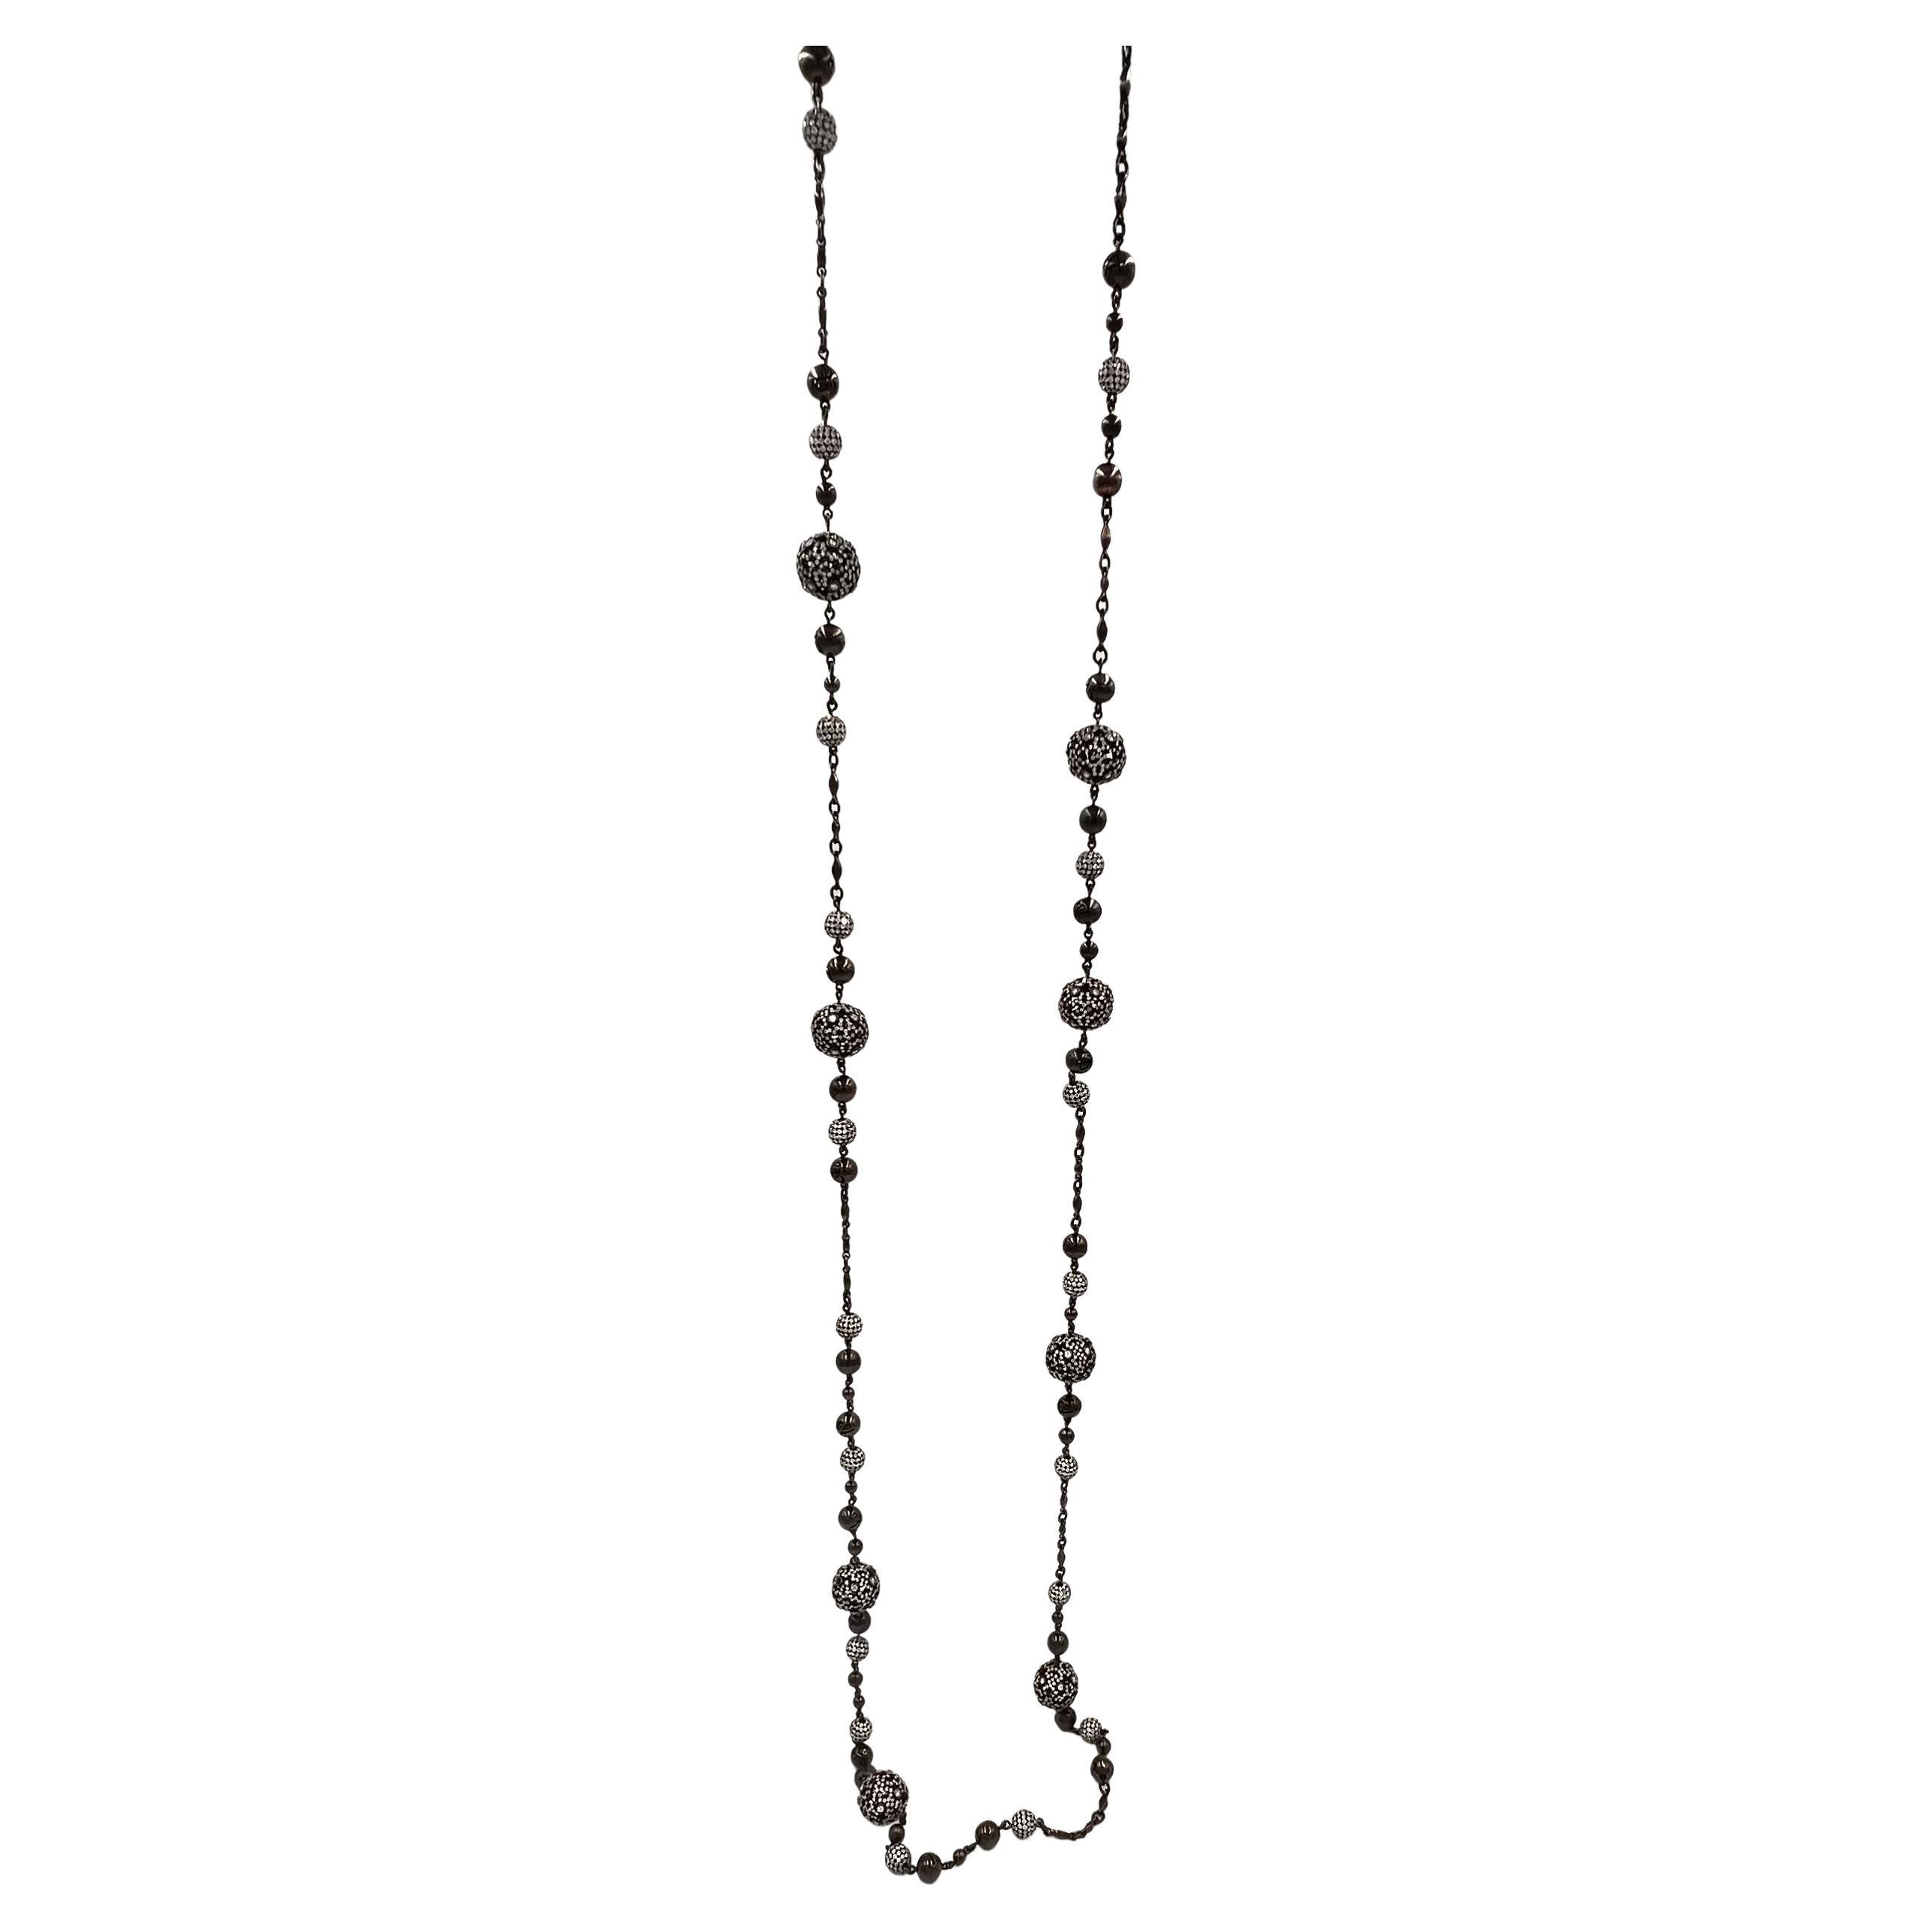 Jacob & Co. 18k Black Gold Diamond Lace Long Necklace For Sale